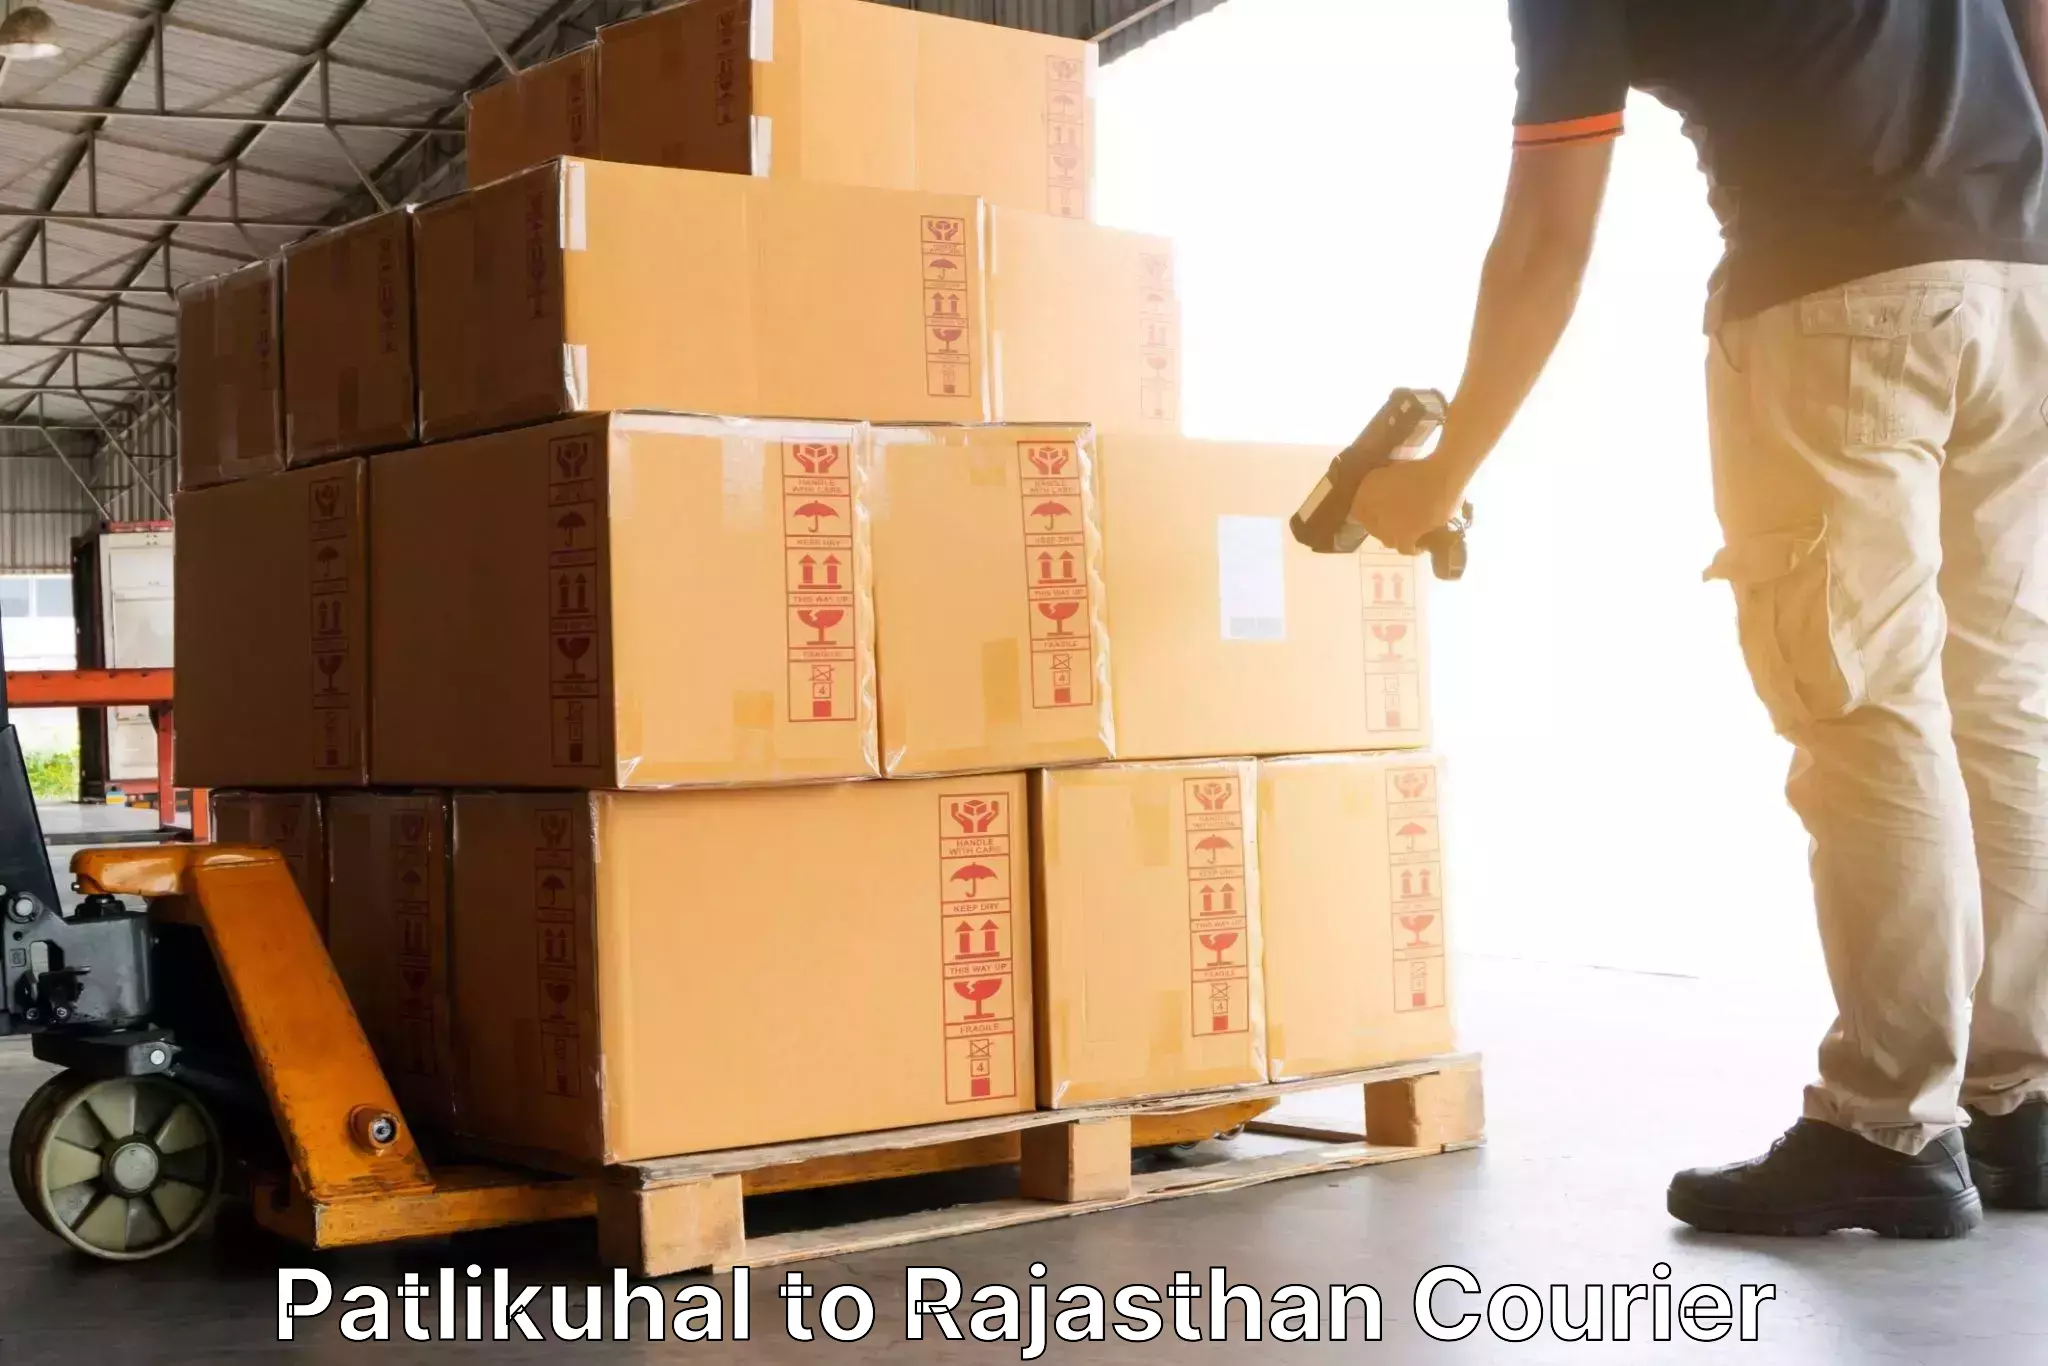 Pharmaceutical courier Patlikuhal to Bonli